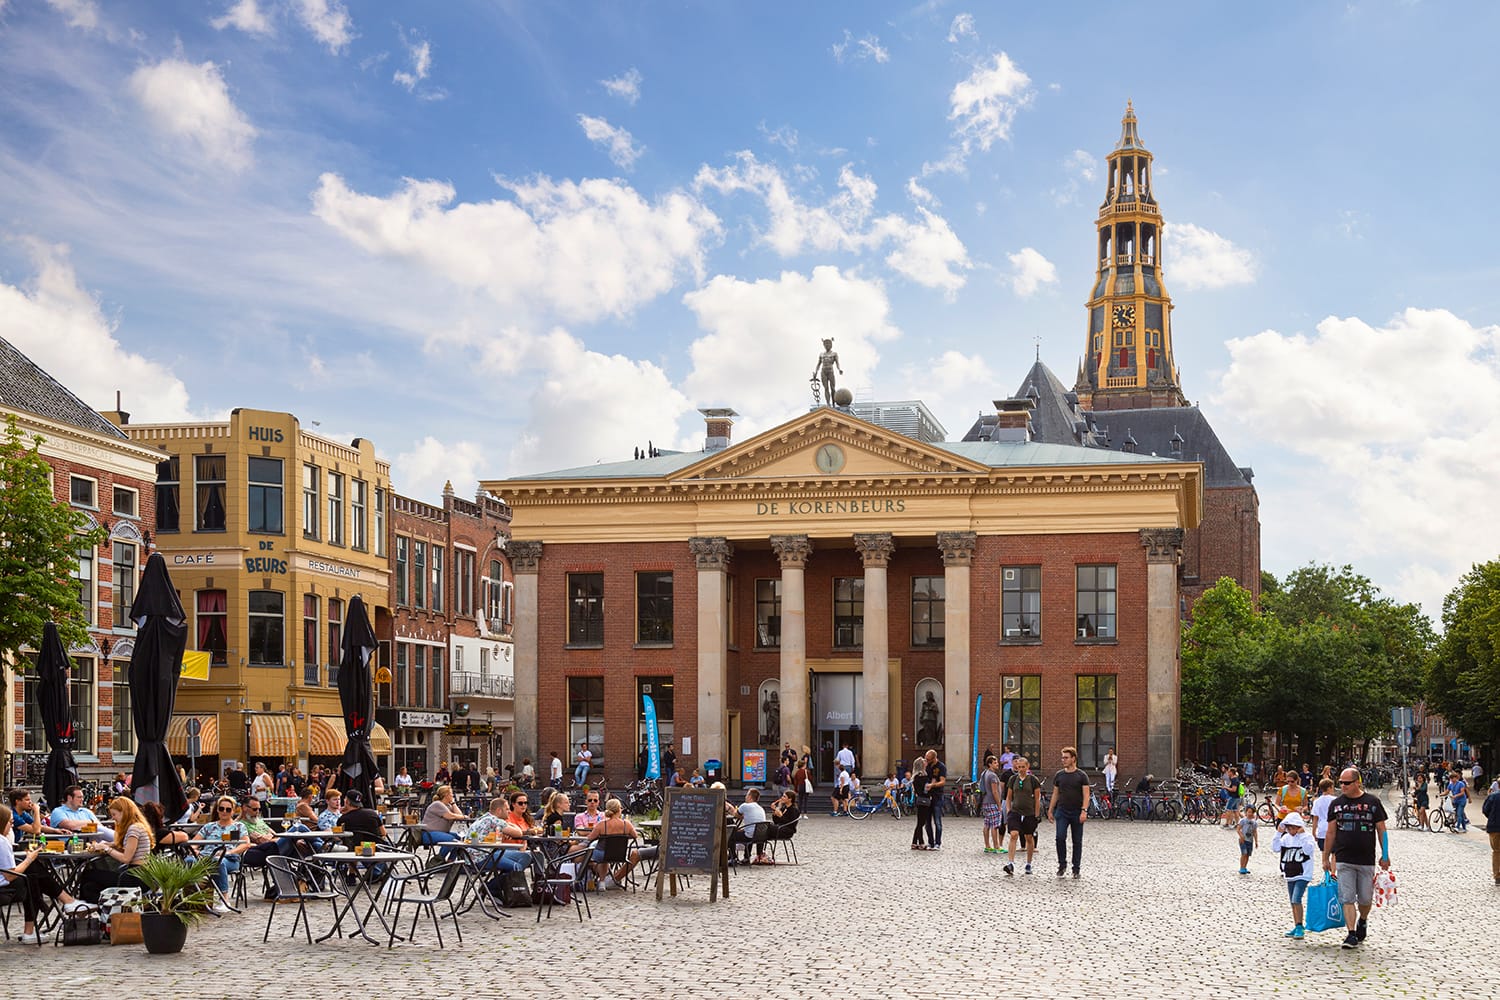 Κτήριο ανταλλαγής σιτηρών και πύργος εκκλησιών στην πλατεία ψαραγοράς στη φοιτητική πόλη του Χρόνινγκεν.